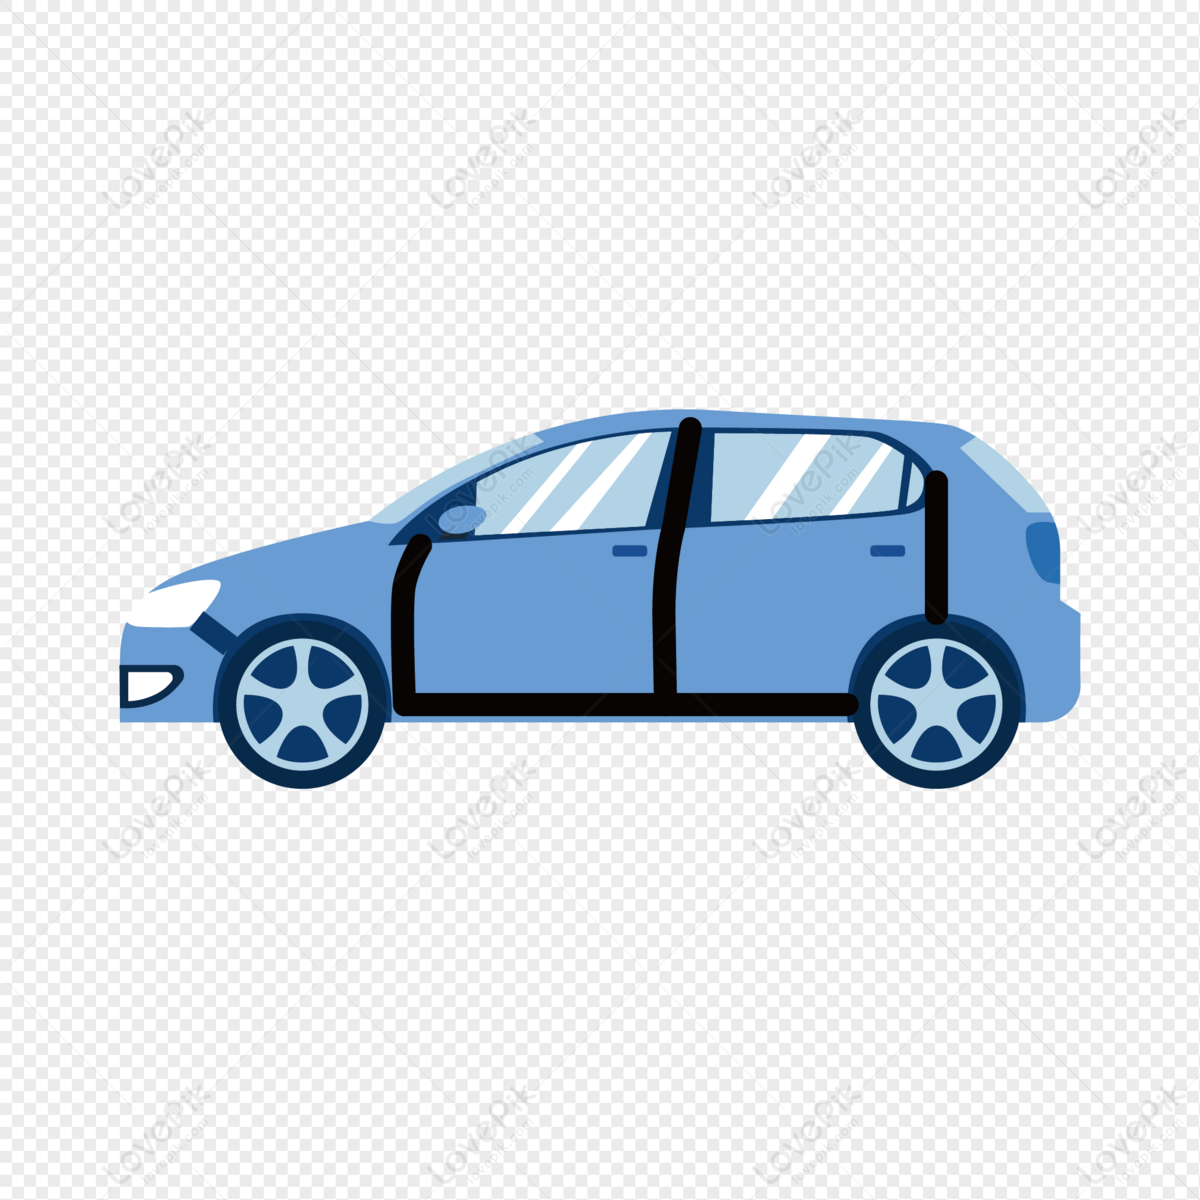 Car PNG: Bạn đang tìm kiếm những hình ảnh về xe hơi với độ phân giải cao để sử dụng cho thiết kế hay chỉnh sửa ảnh? Những hình ảnh Car PNG chất lượng cao của chúng tôi sẽ giúp bạn tiết kiệm thời gian tìm kiếm và tăng tính chuyên nghiệp cho dự án của bạn.